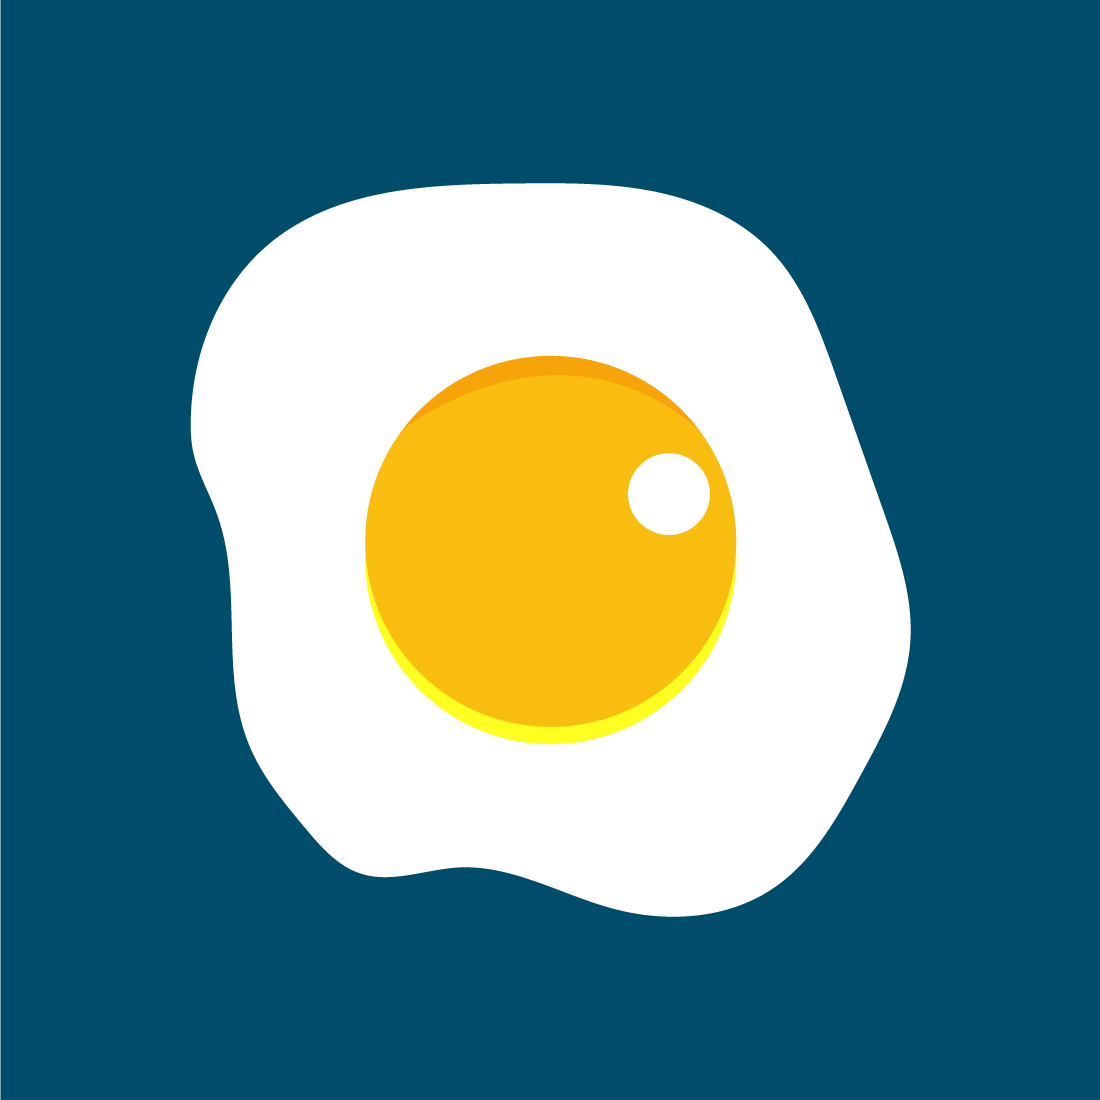 Creative Gradient Fresh Egg Logo design, Vector design concept preview image.